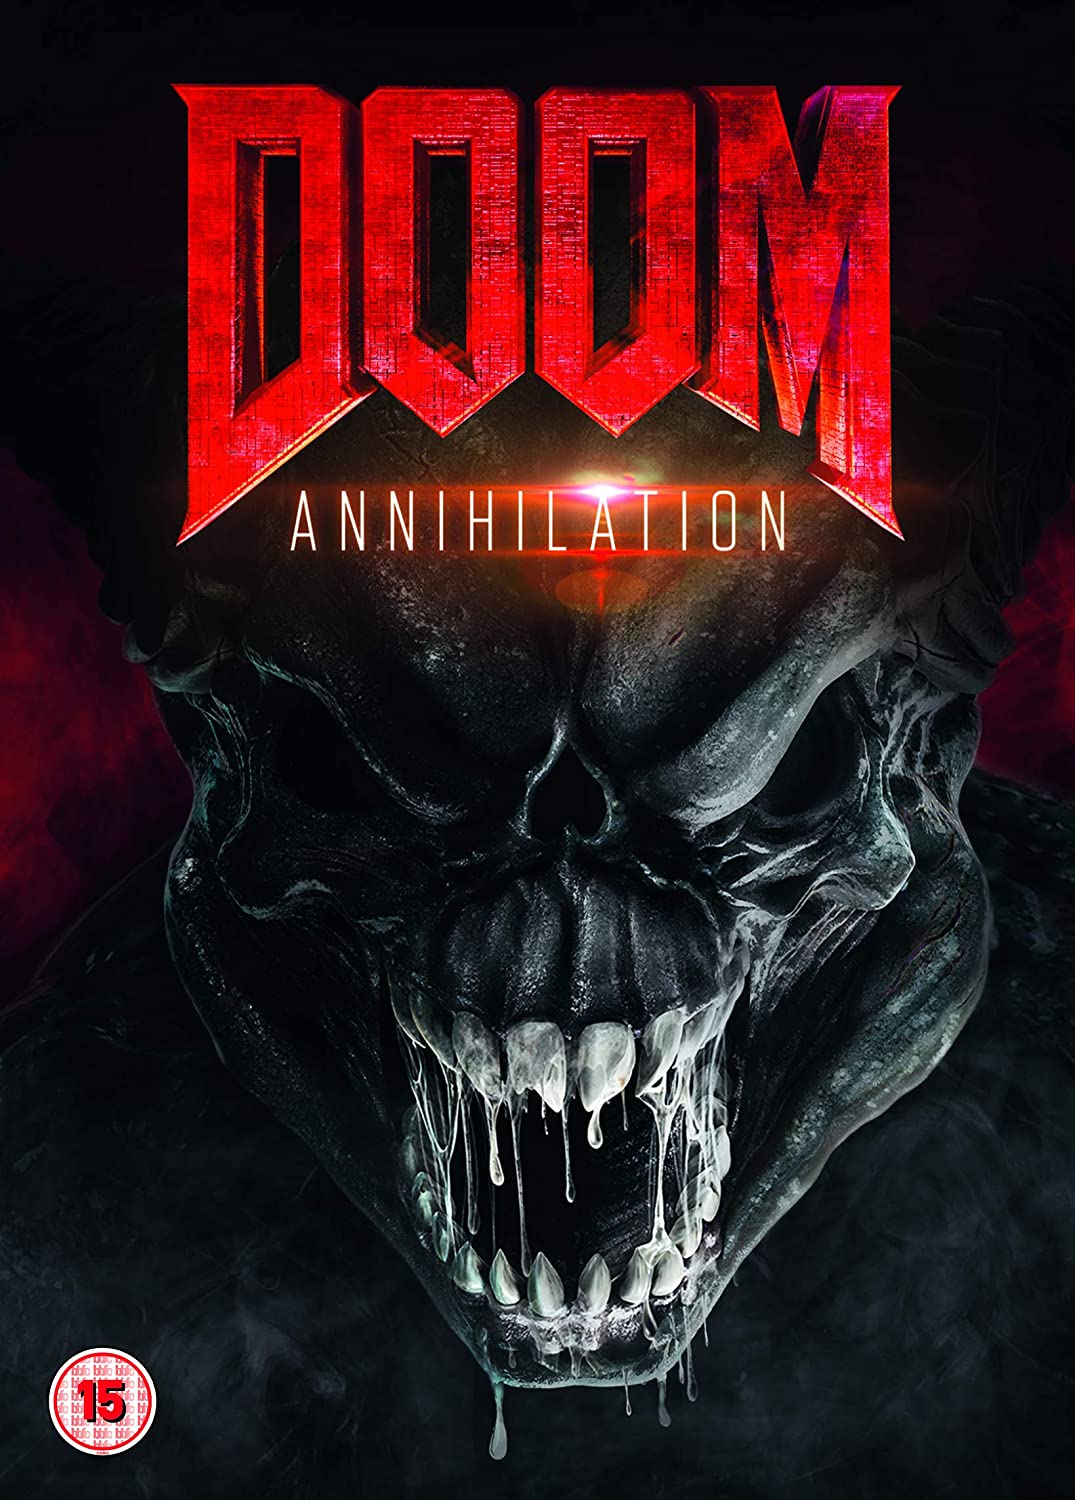 Doom: Annihilation (DVD)